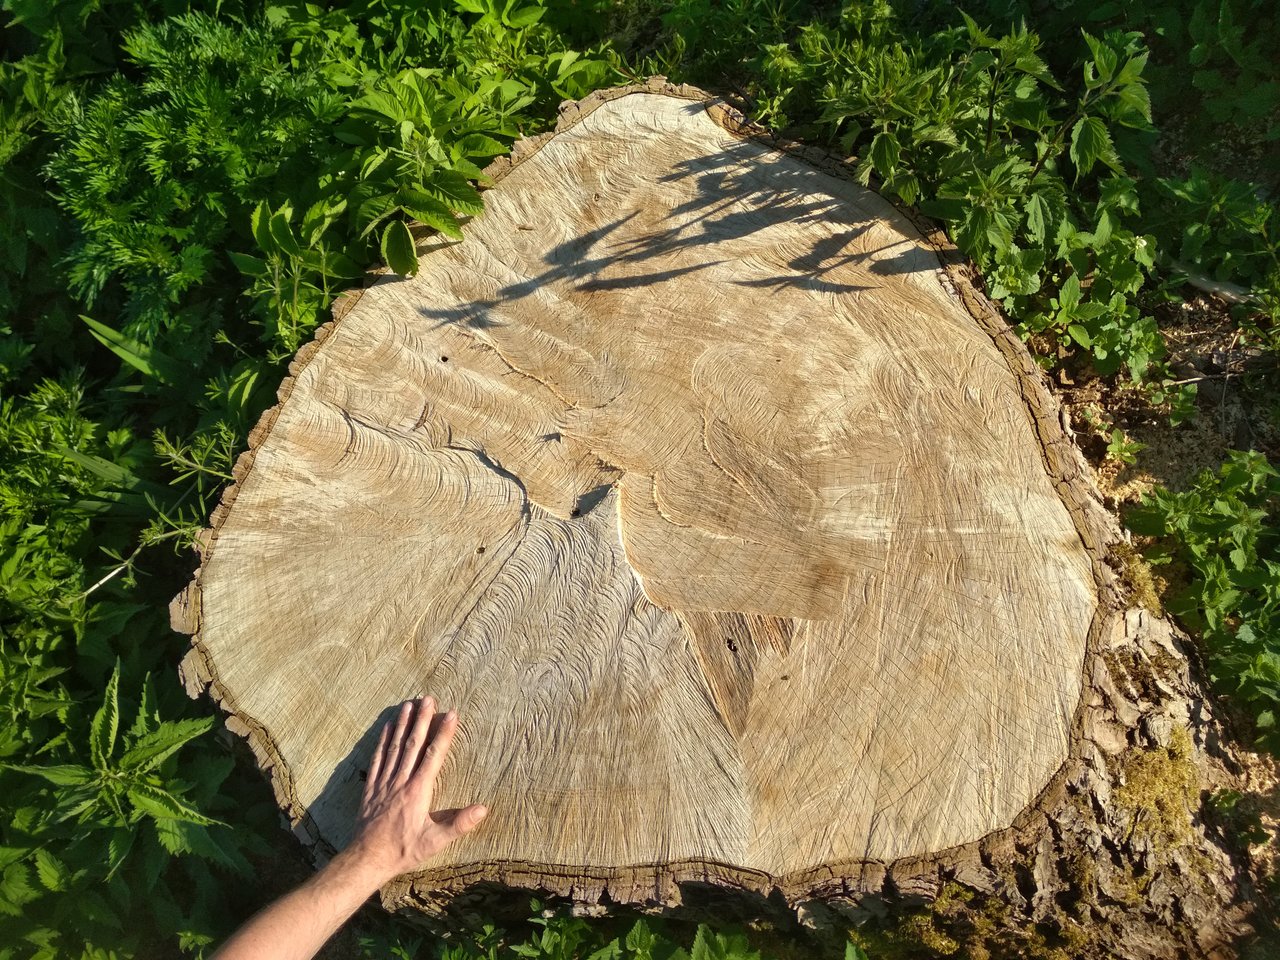  Jaunimas išpjautus medžius pagerbė ypatingu gestu.<br>Autorės nuotr.